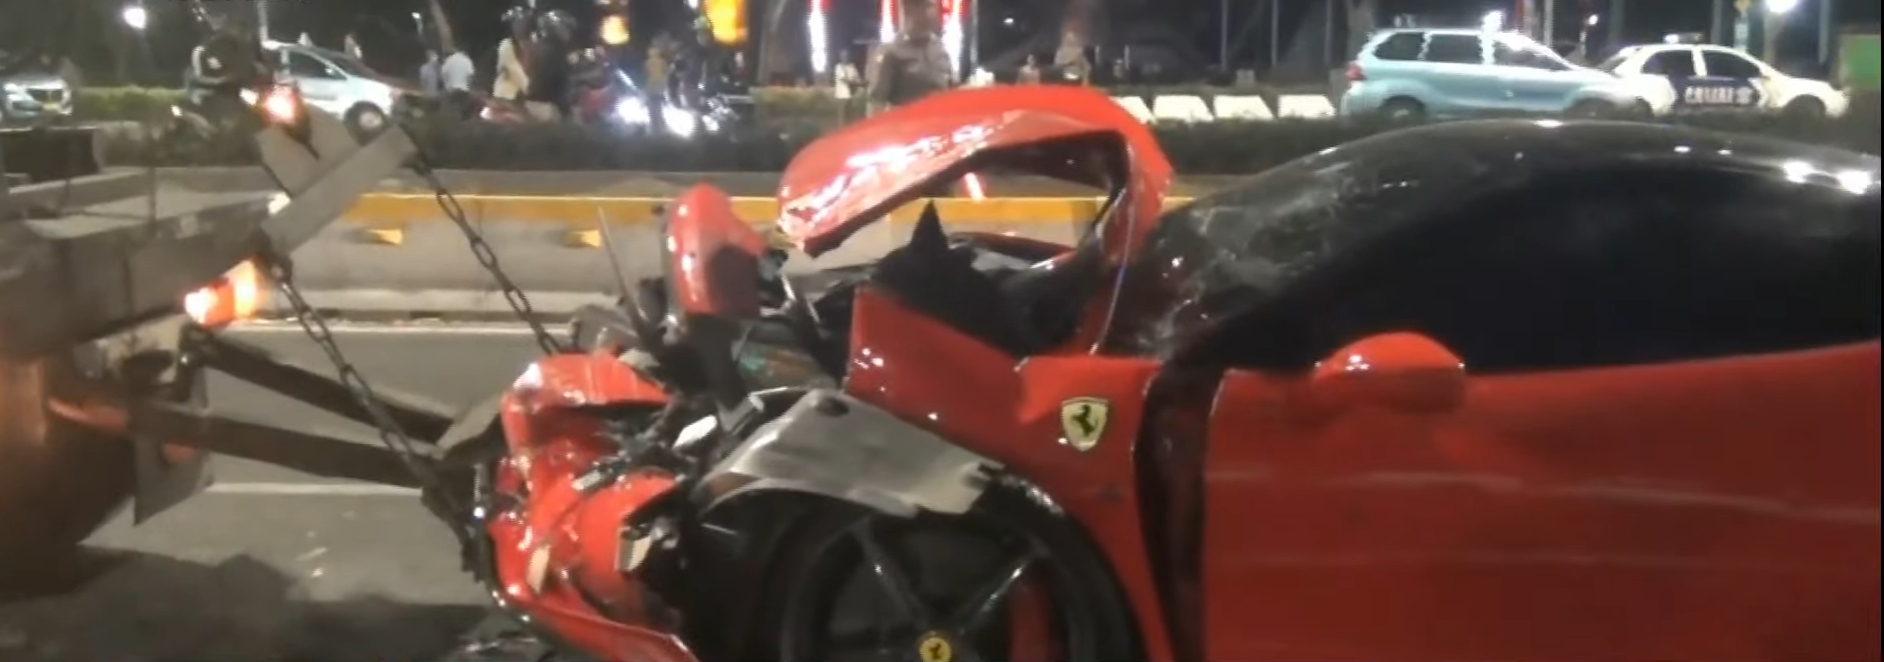 Ferrari Ringsek Parah Usai Tabrak Sejumlah Motor dan Taksi di Lampu Merah Bundaran Senayan, Endingnya Enggak Banget!